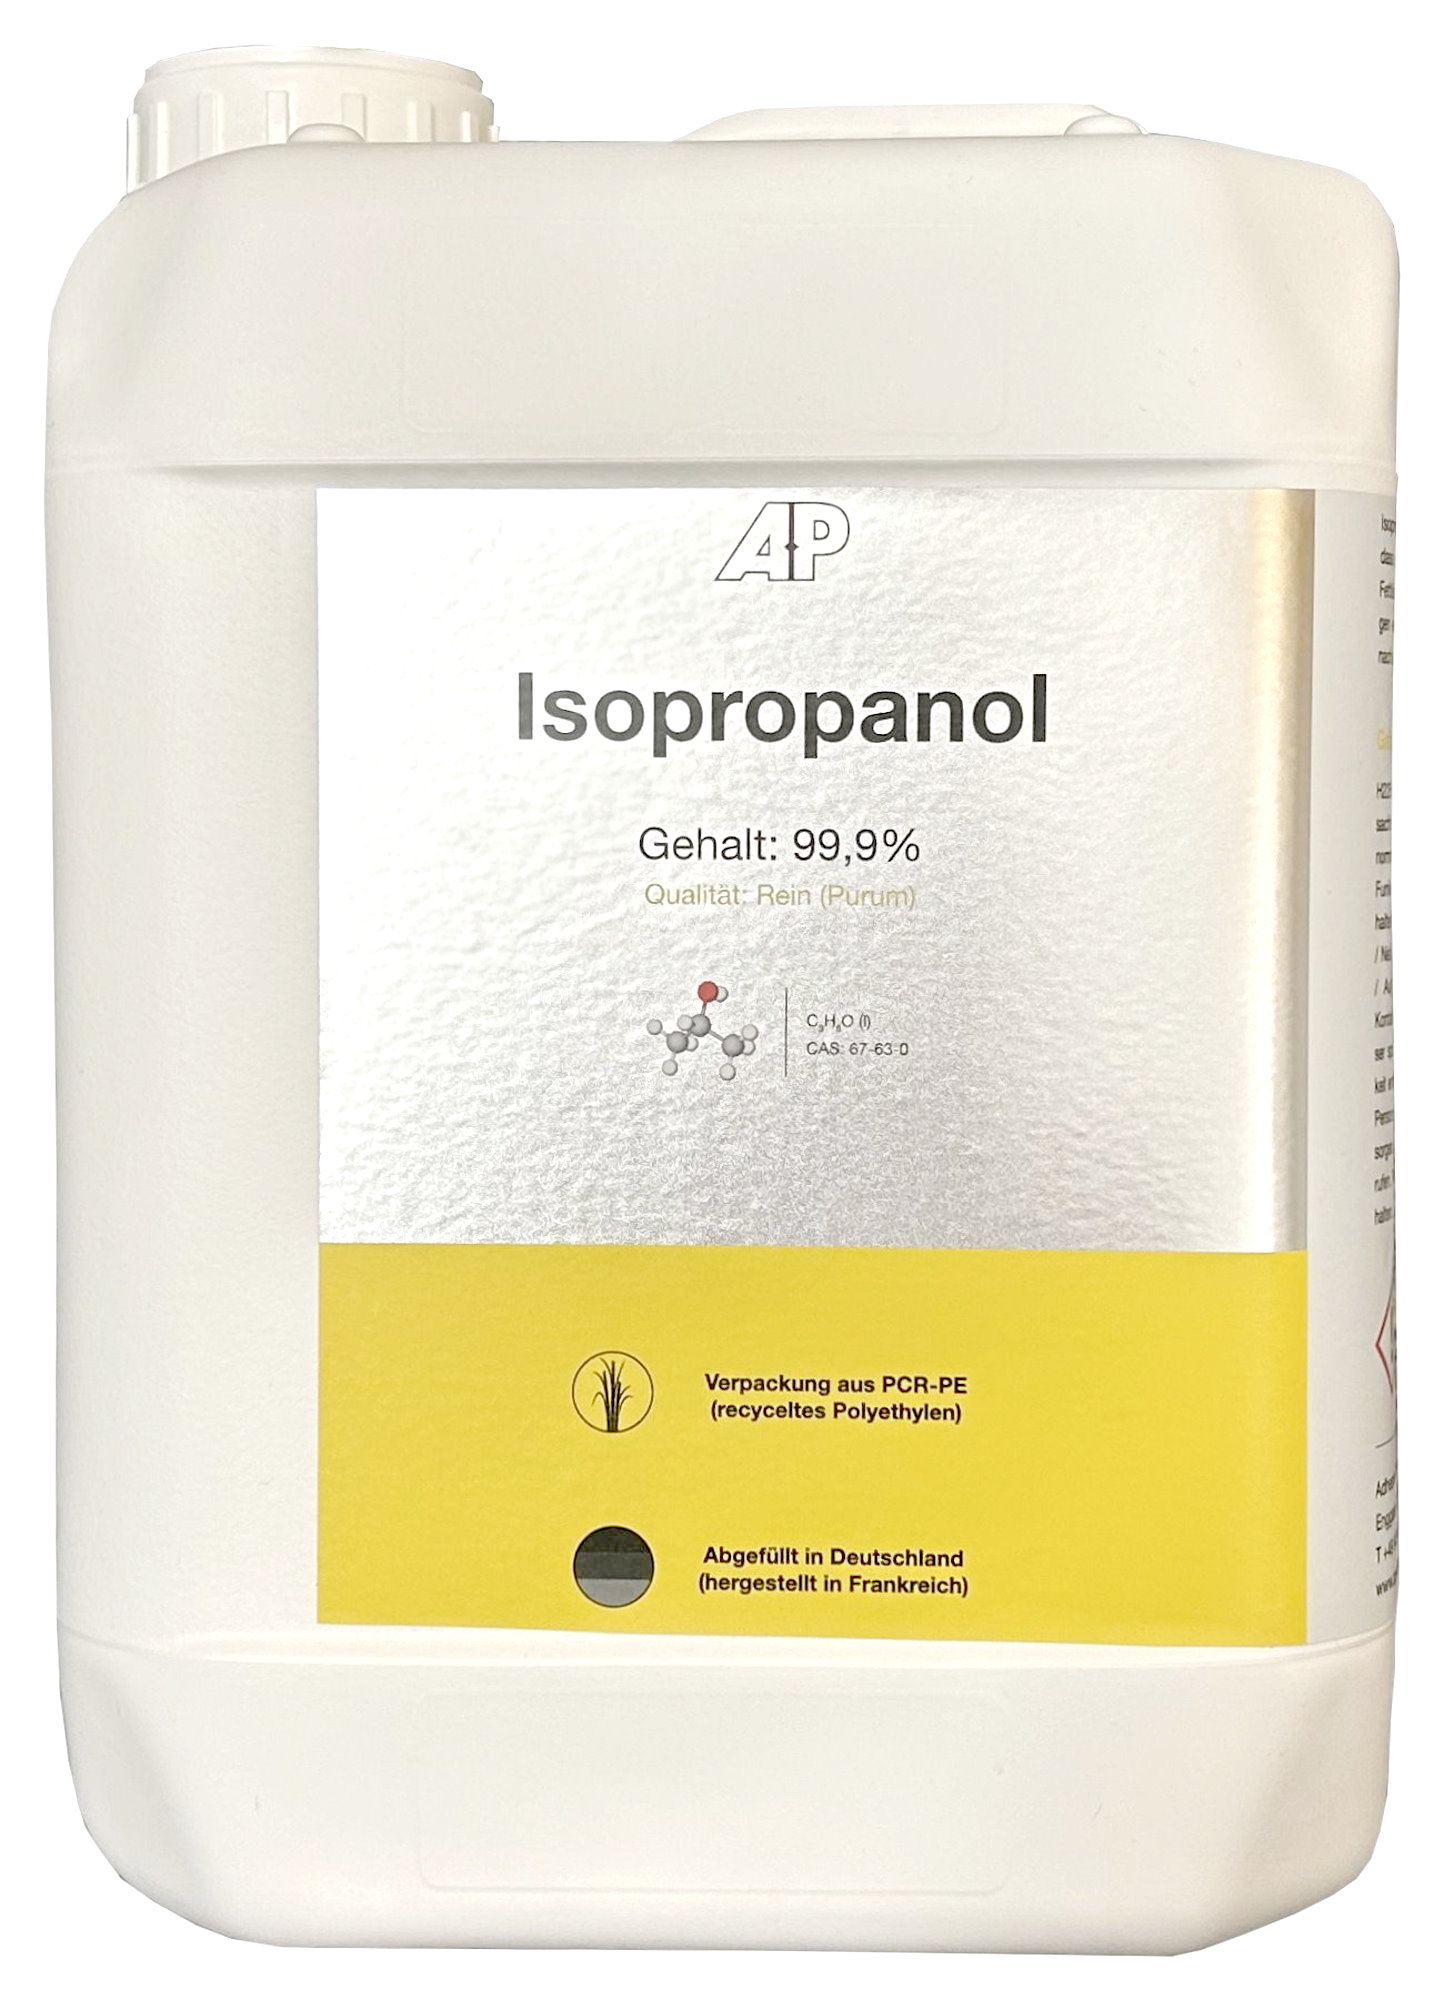 Isopropanol 99,9% - Reiniger / Entfetter / Lösungsmittel, 5 L